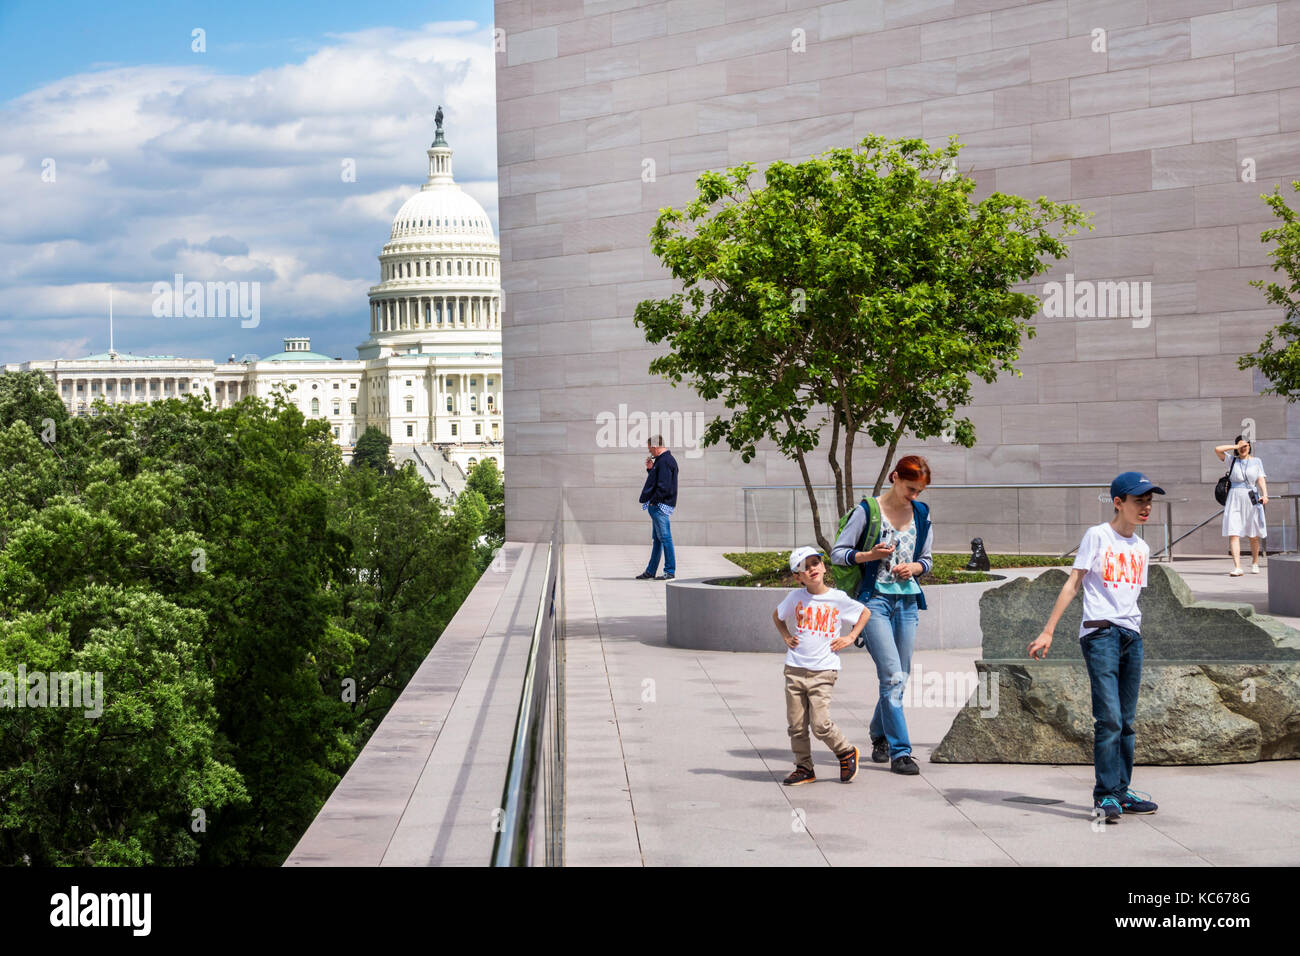 Washington DC,National Gallery of Art,musée,toit,terrasse,vue sur le Capitole,femme femme femme,garçon garçons,mâle enfant enfants enfants enfant jeune,DC1705270 Banque D'Images